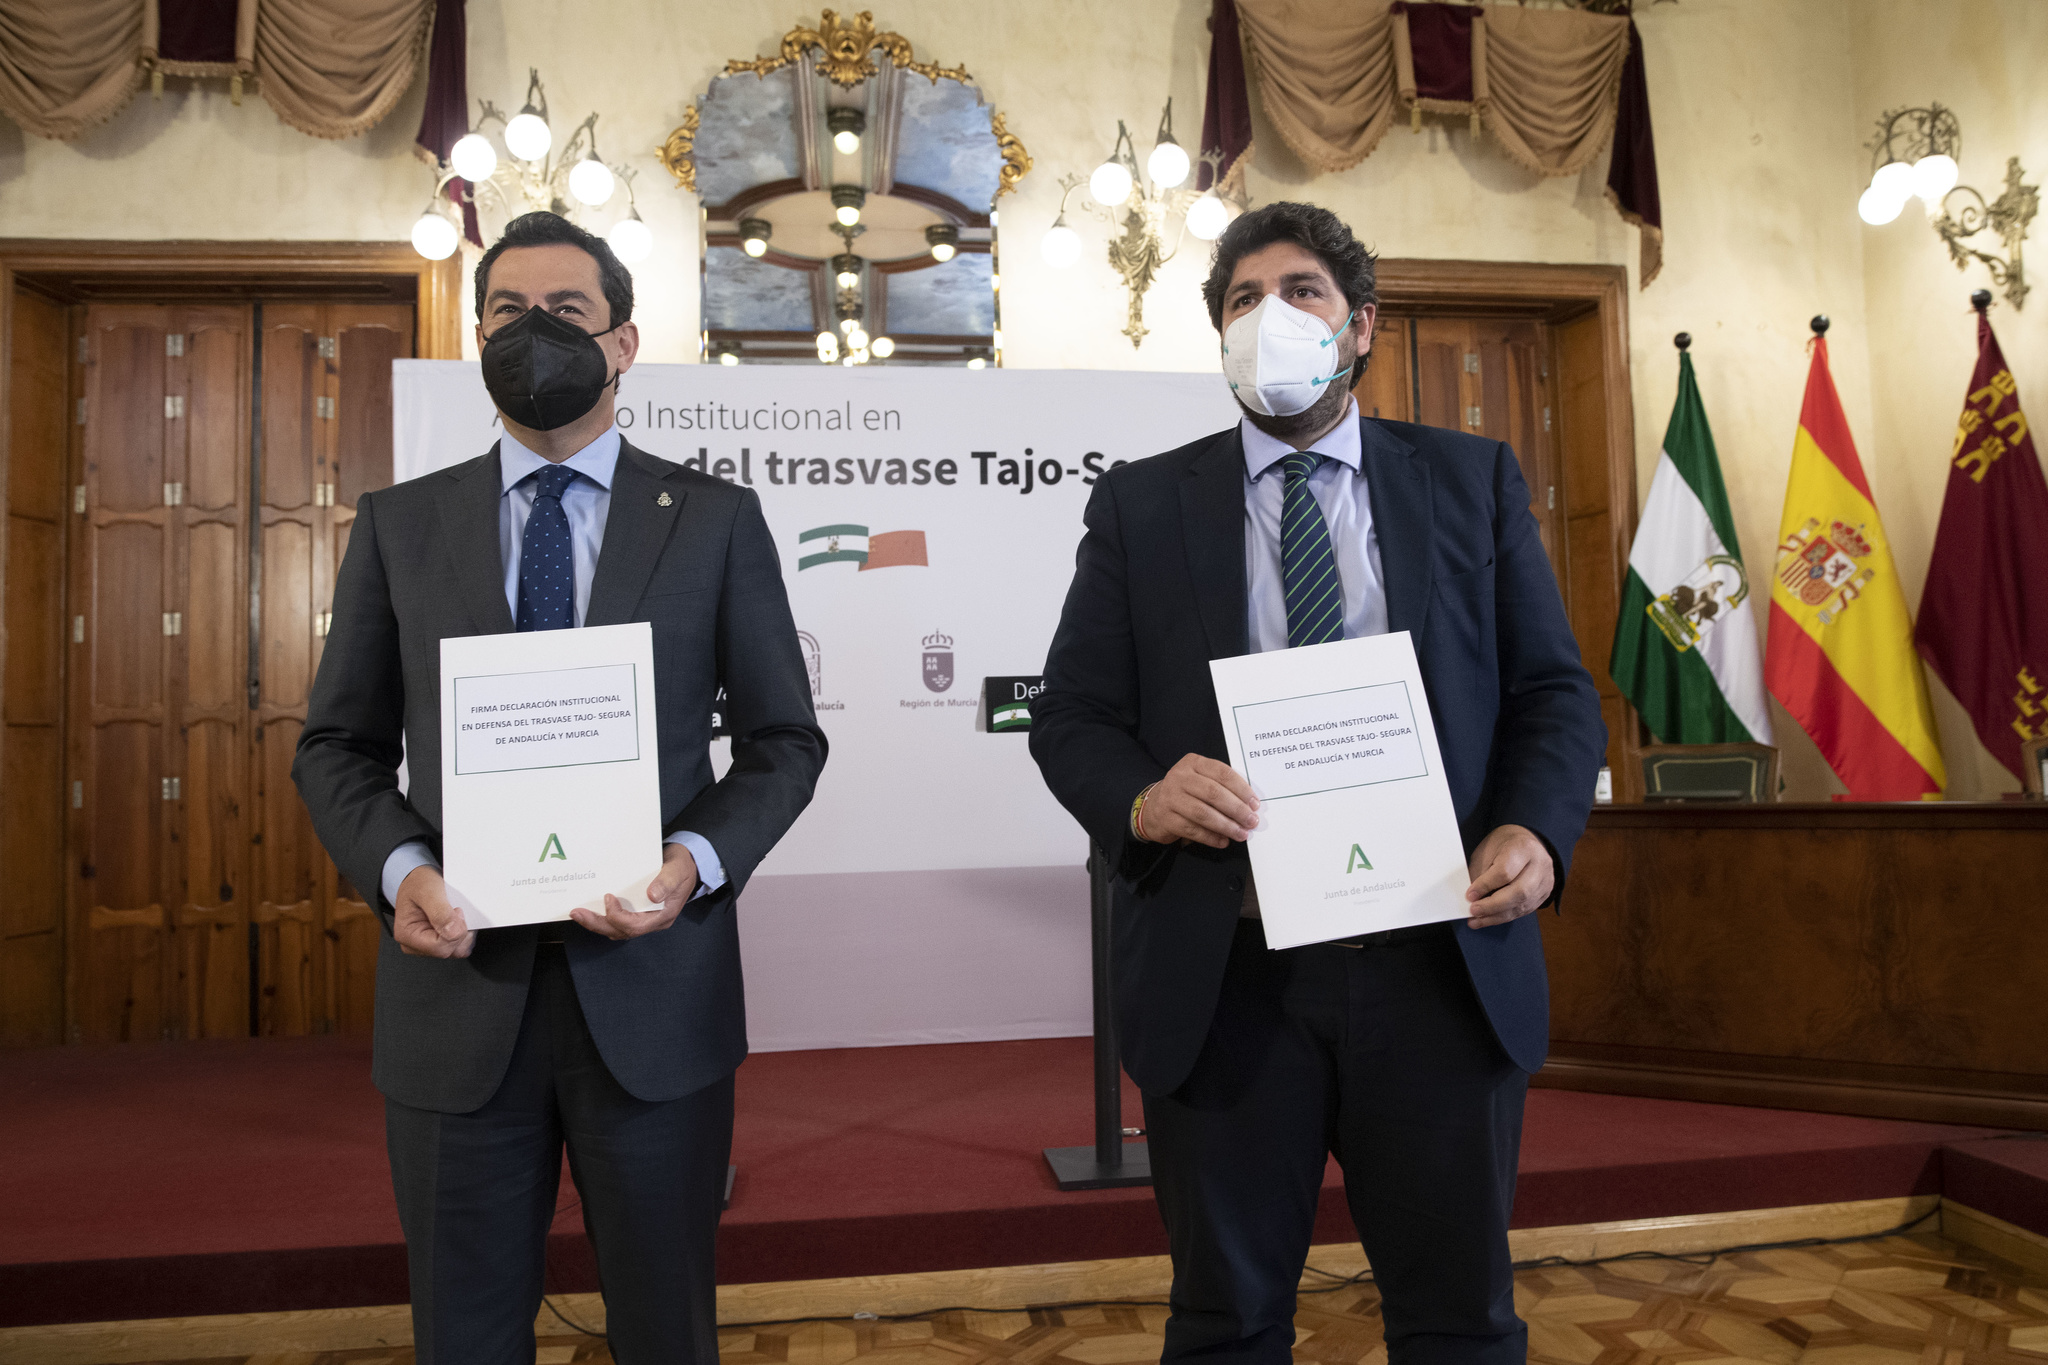 Los presidentes de la Junta de Andalucía y de la Región de Murcia, tras la firma de la declaración institucional en defensa del trasvase Tajo-Segura